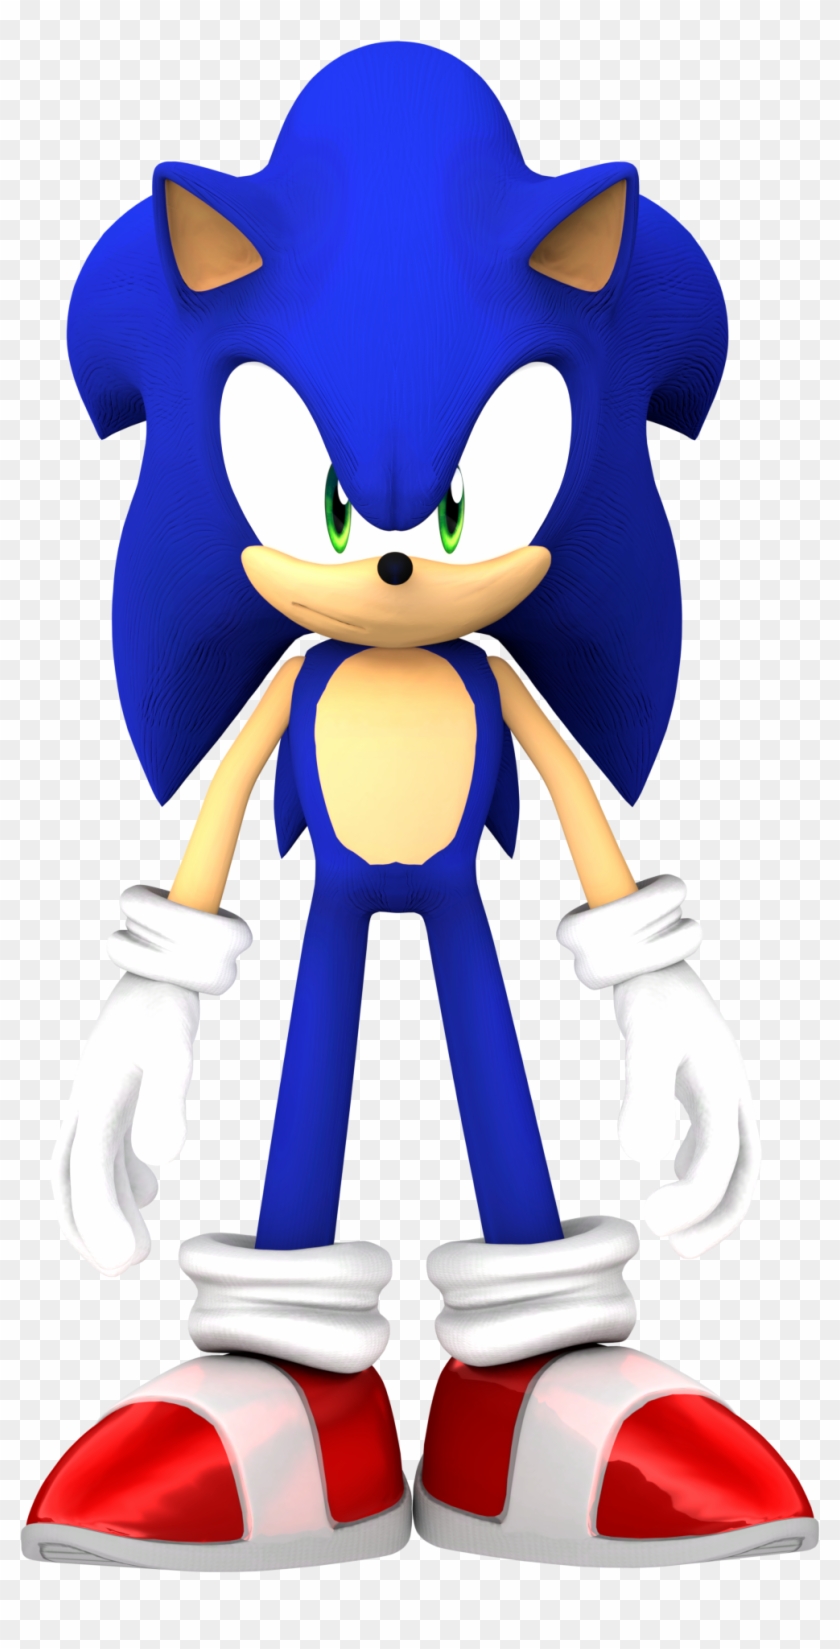 I Just Rendered A Certain Blue Hedgehog In Blender - Sonic The Hedgehog Clipart